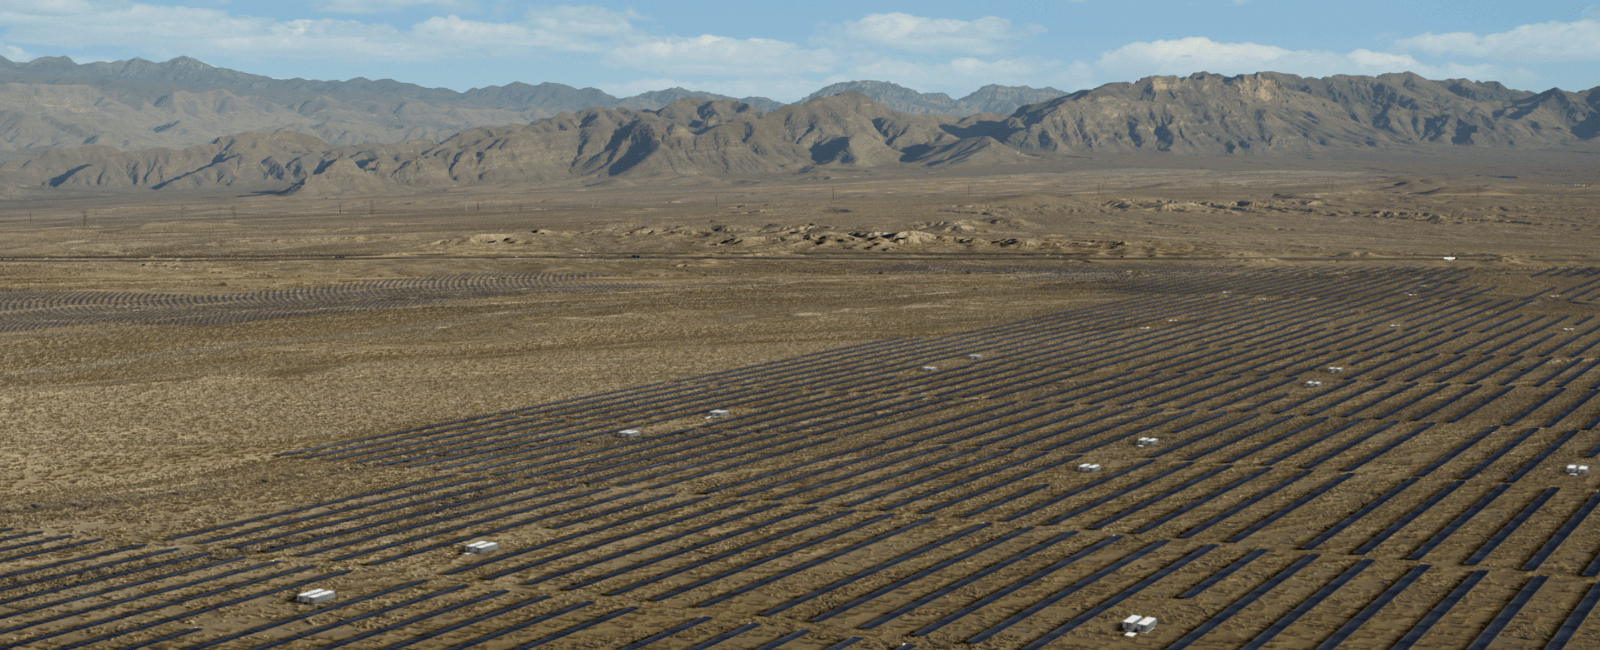 Solar panels in a desert.